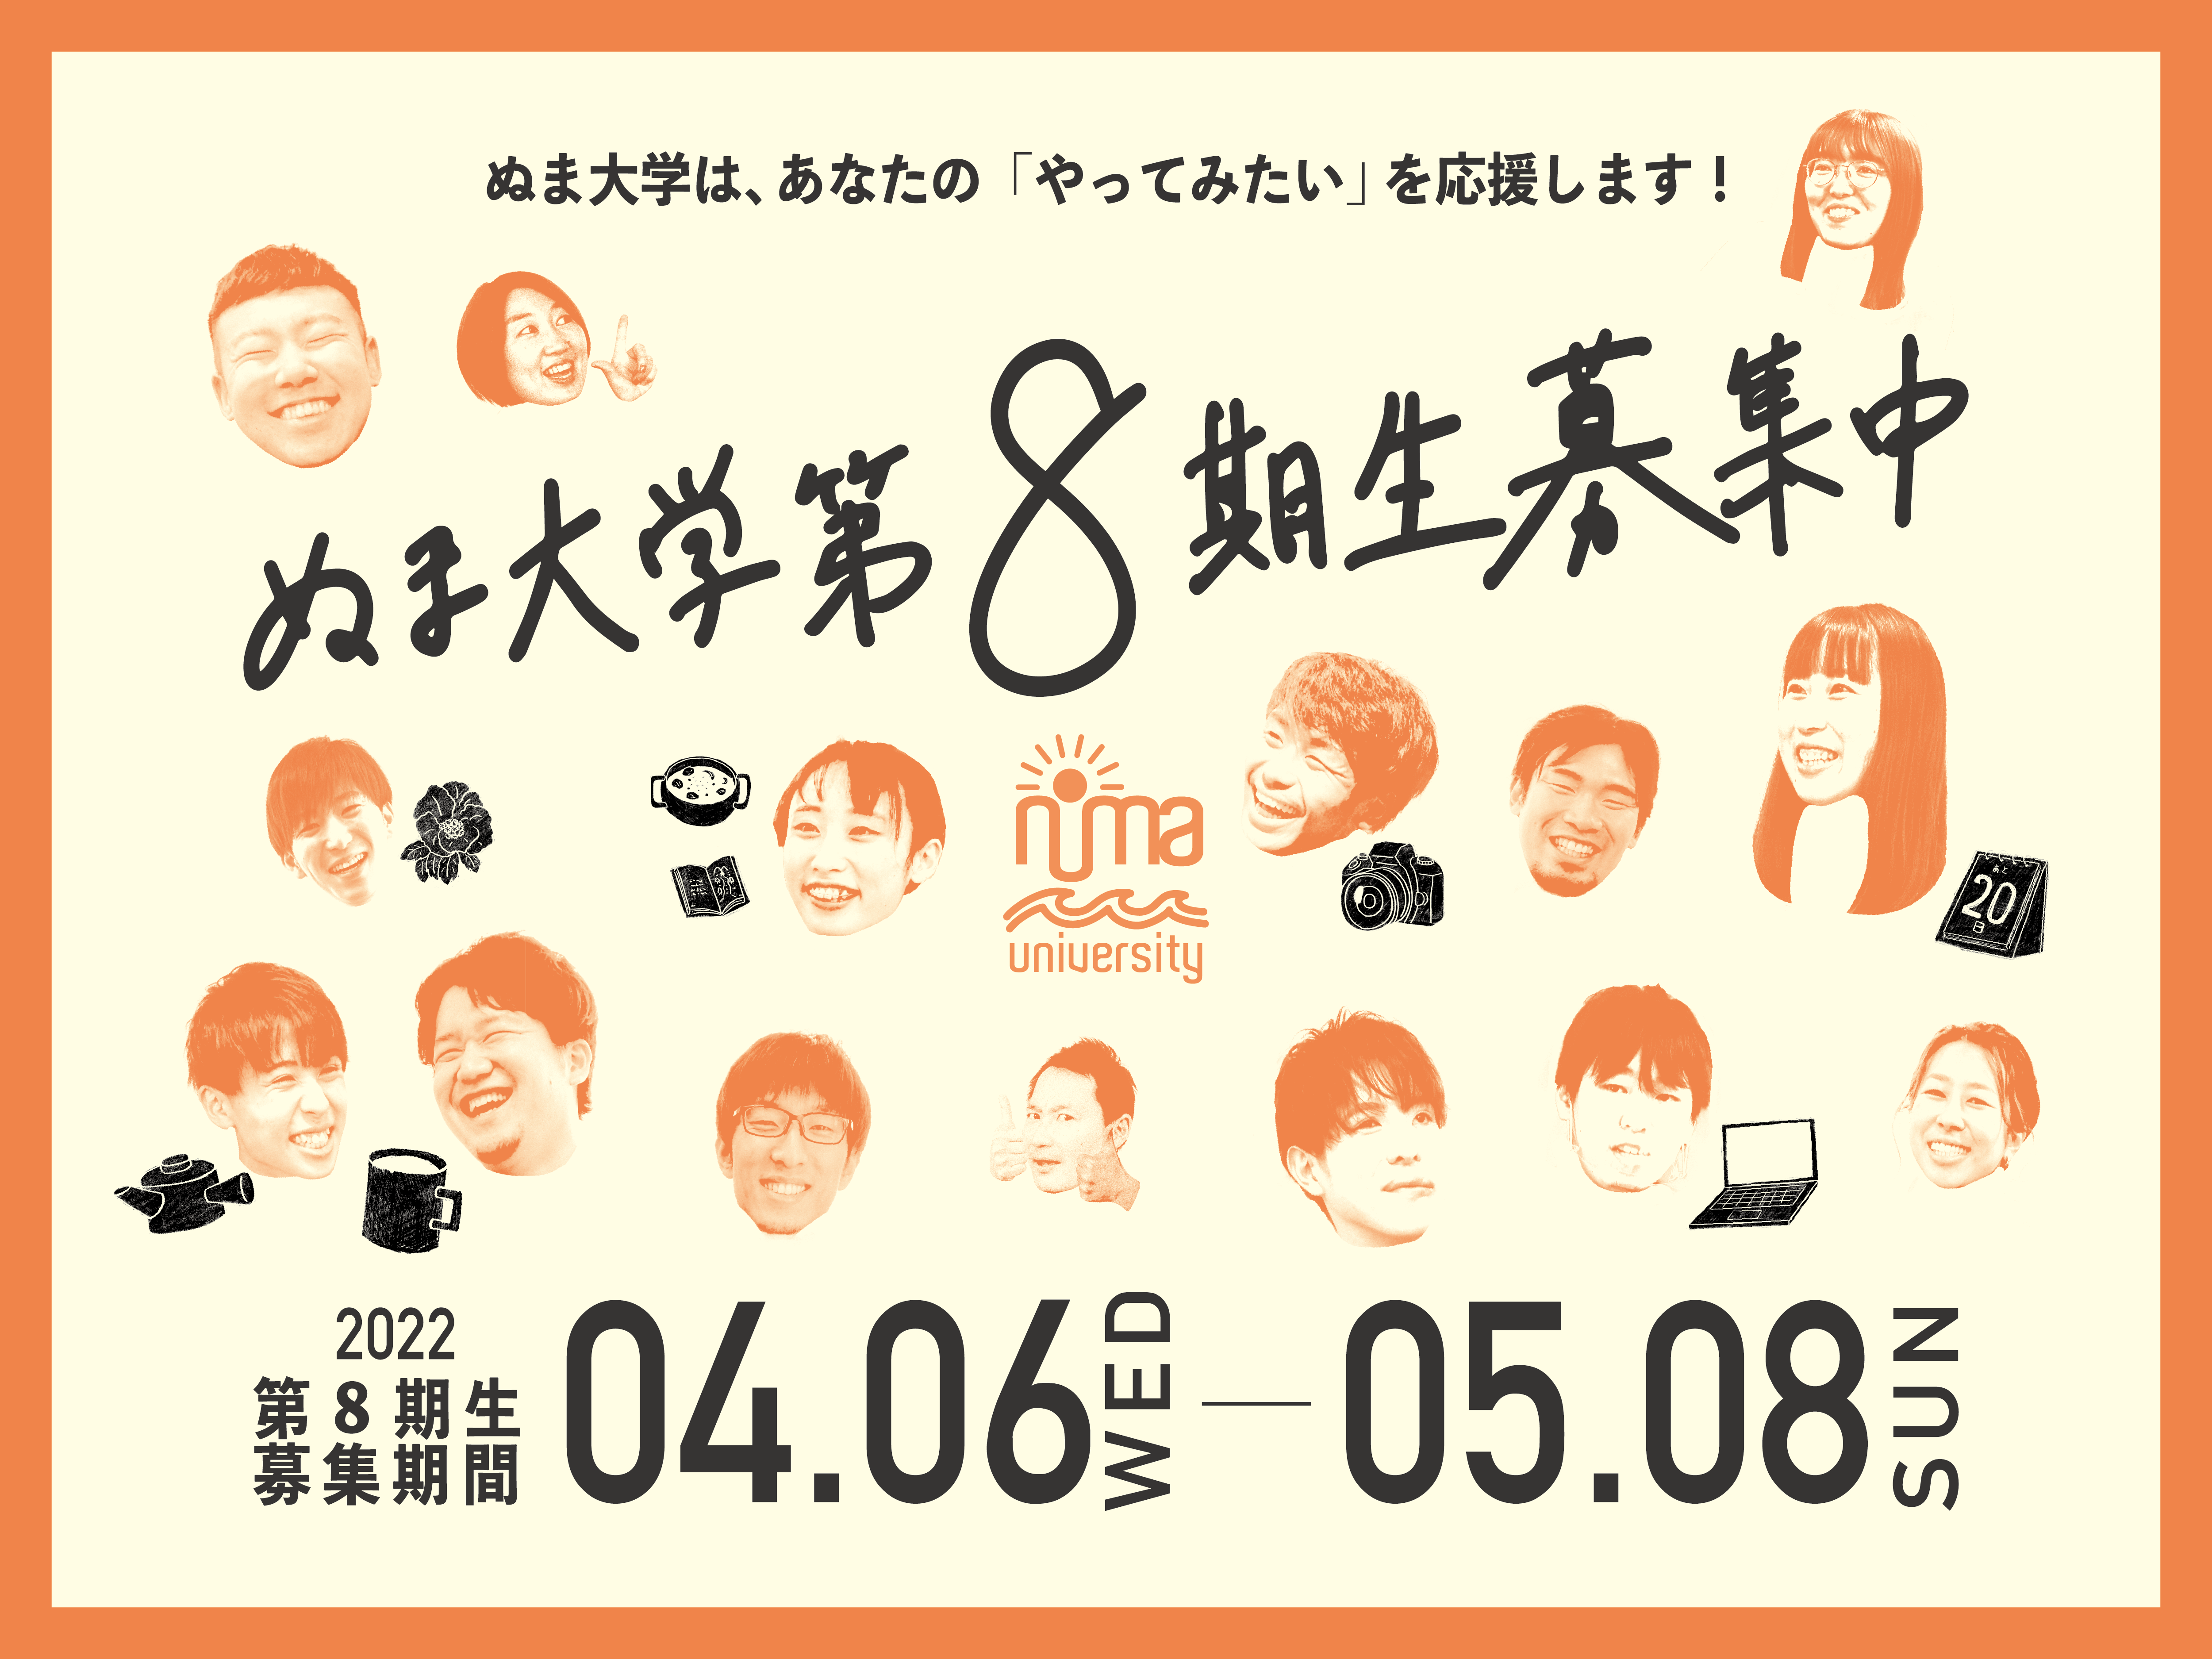 2022.04.06-05.08 ぬま大学第８期受講生募集